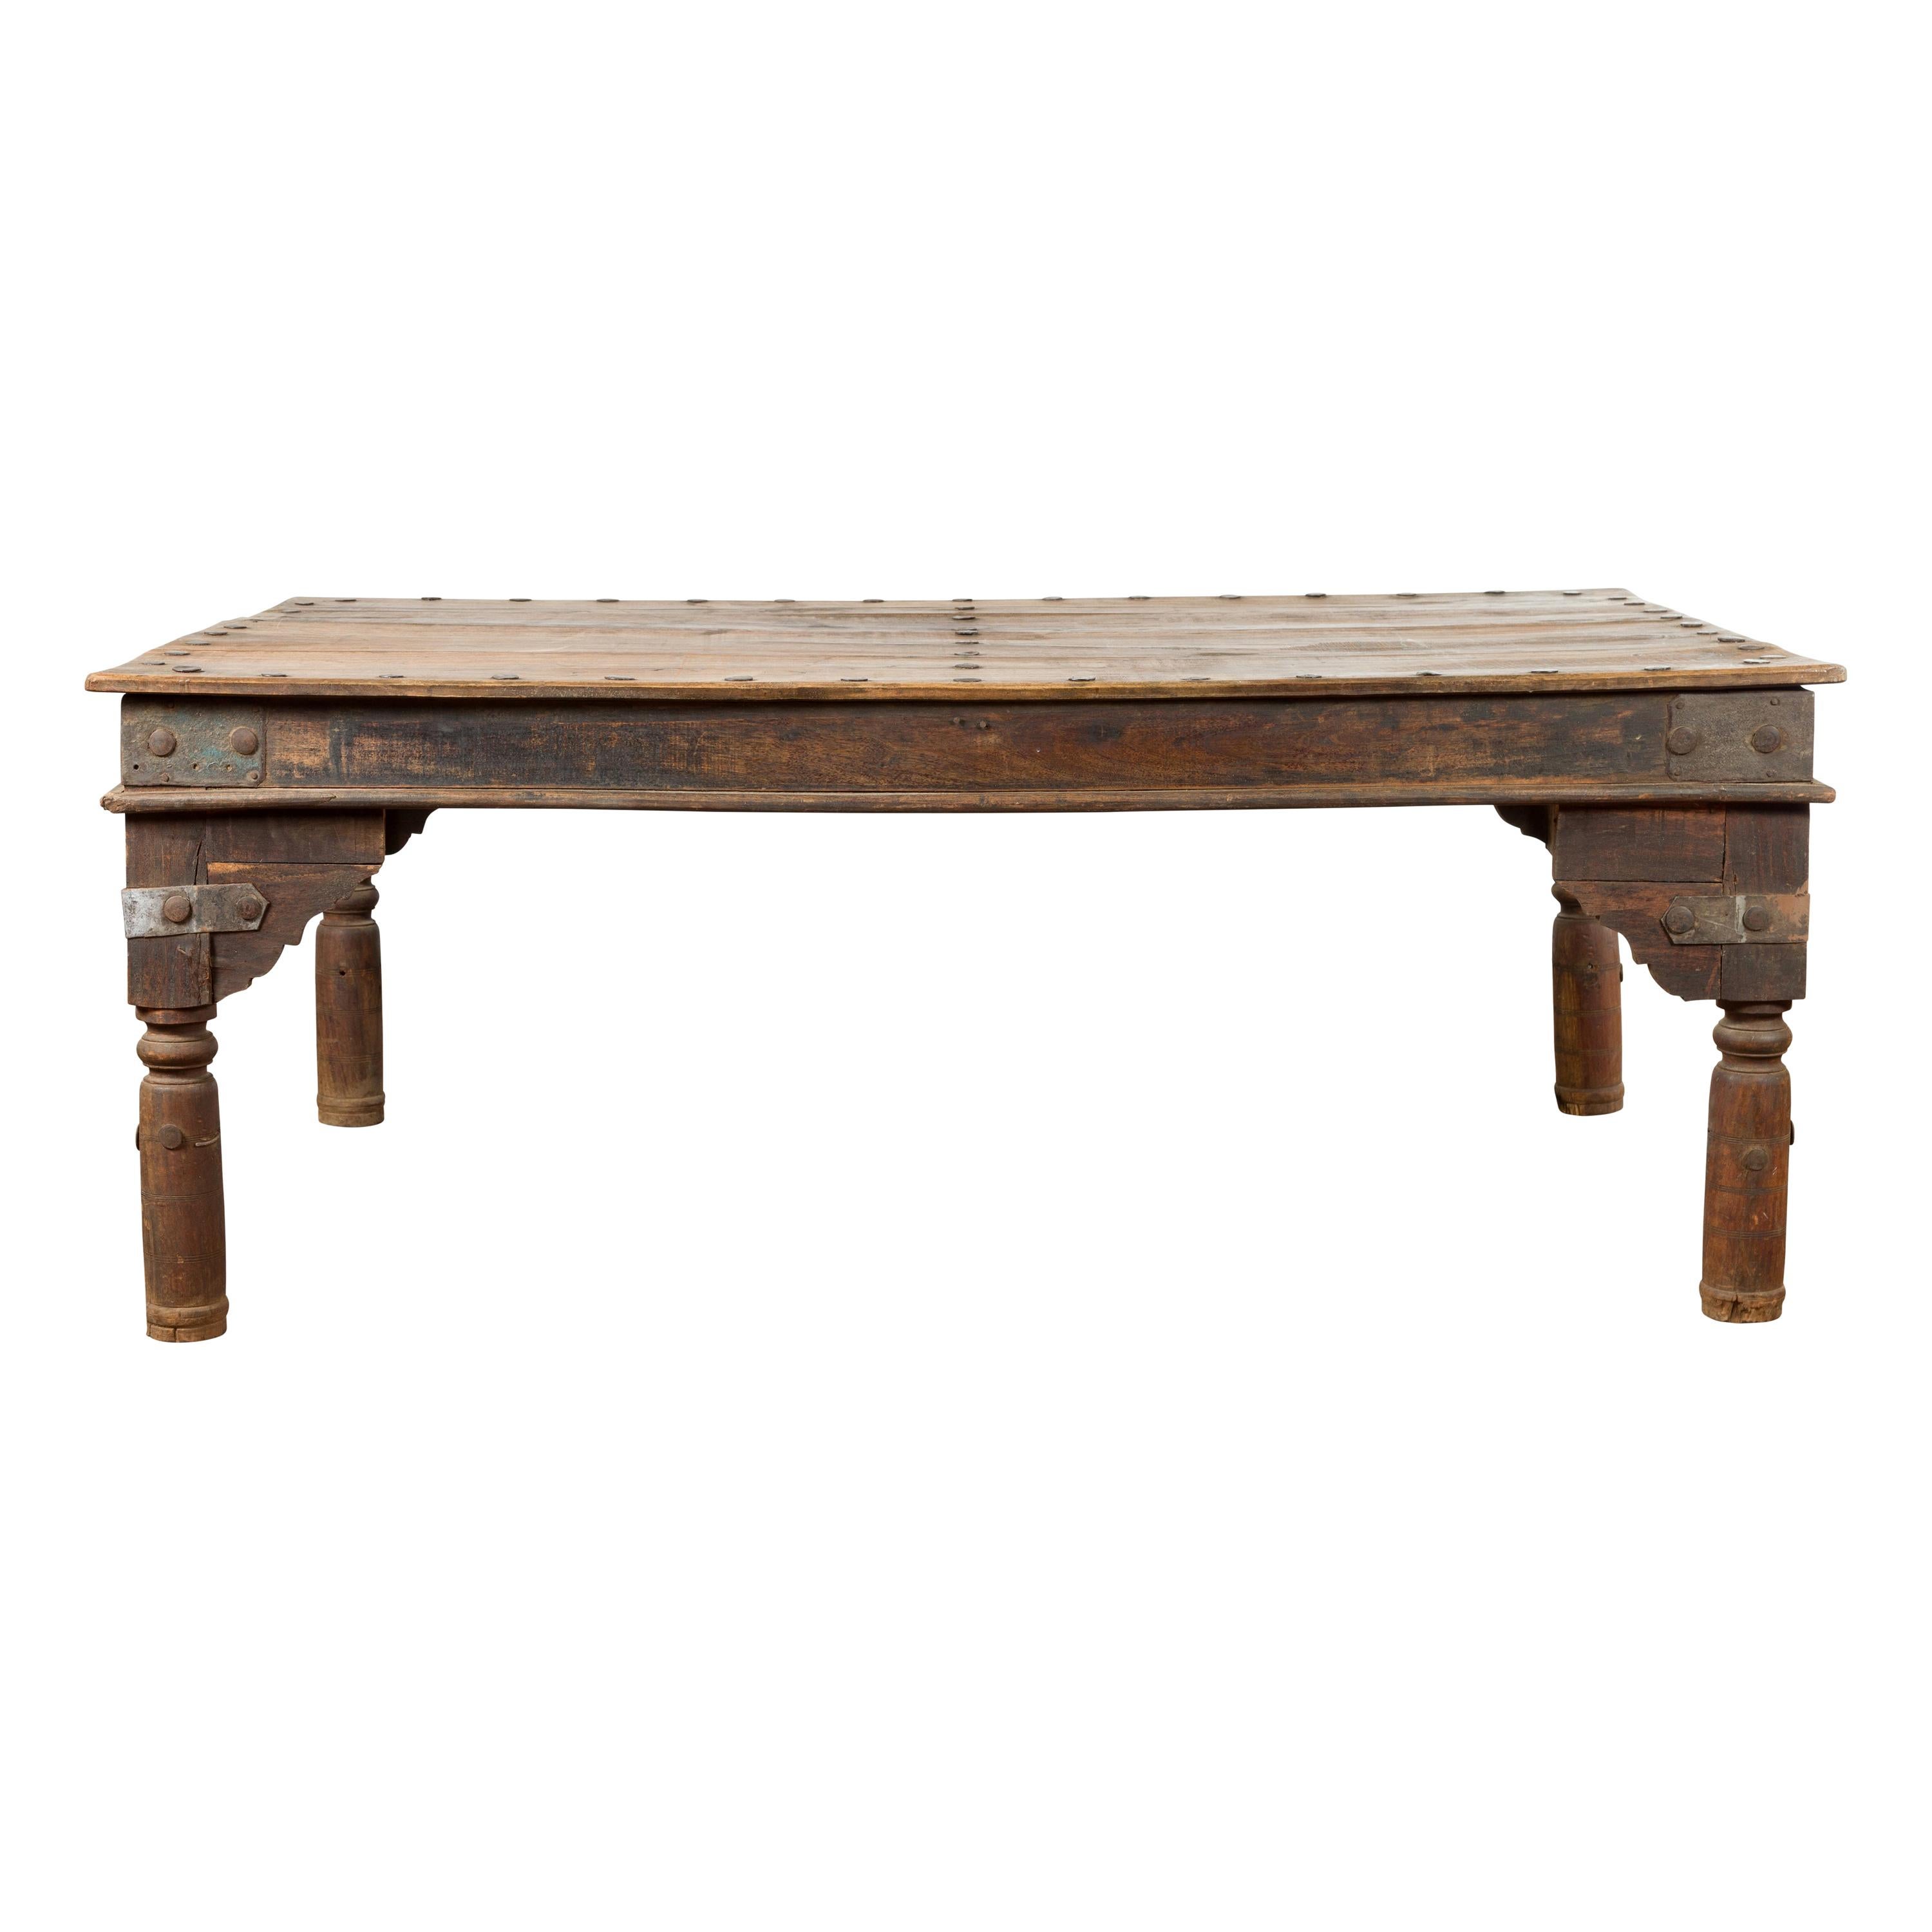 Table de salle à manger en Wood Wood avec patine vieillie, détails en fer et pieds en balustre